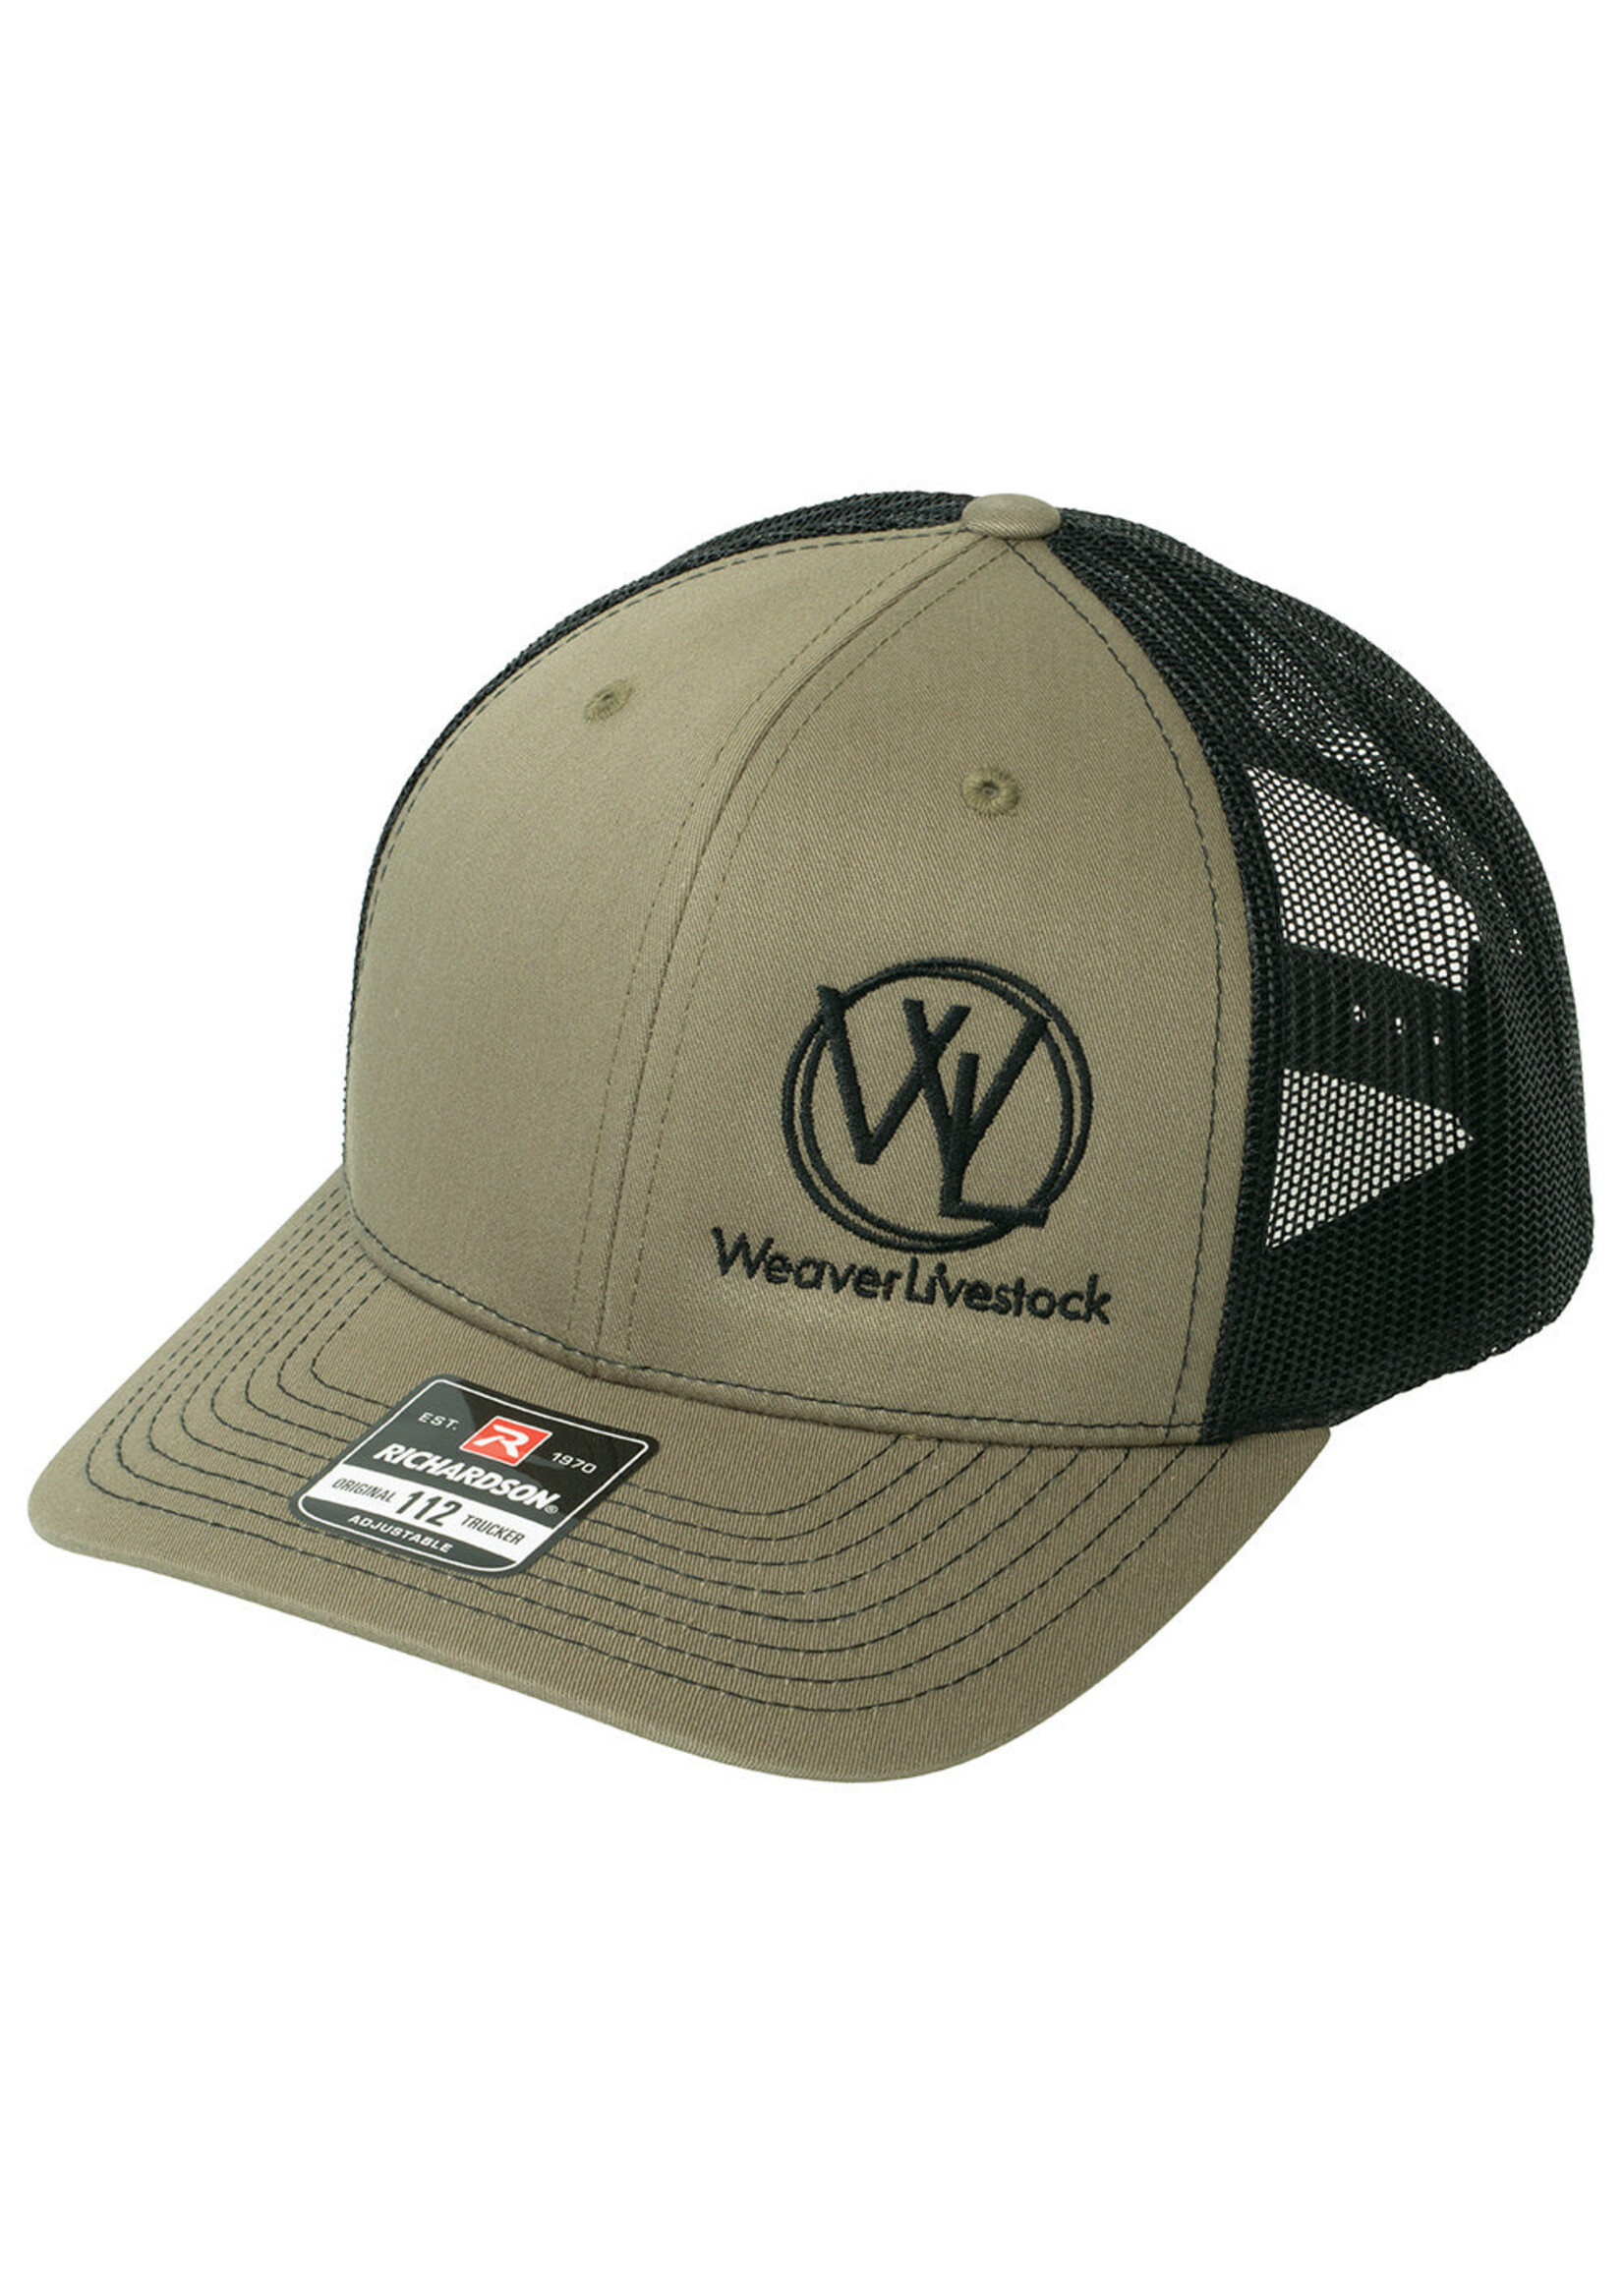 Weaver Livestock Weaver Livestock Brand Hat Green/Black